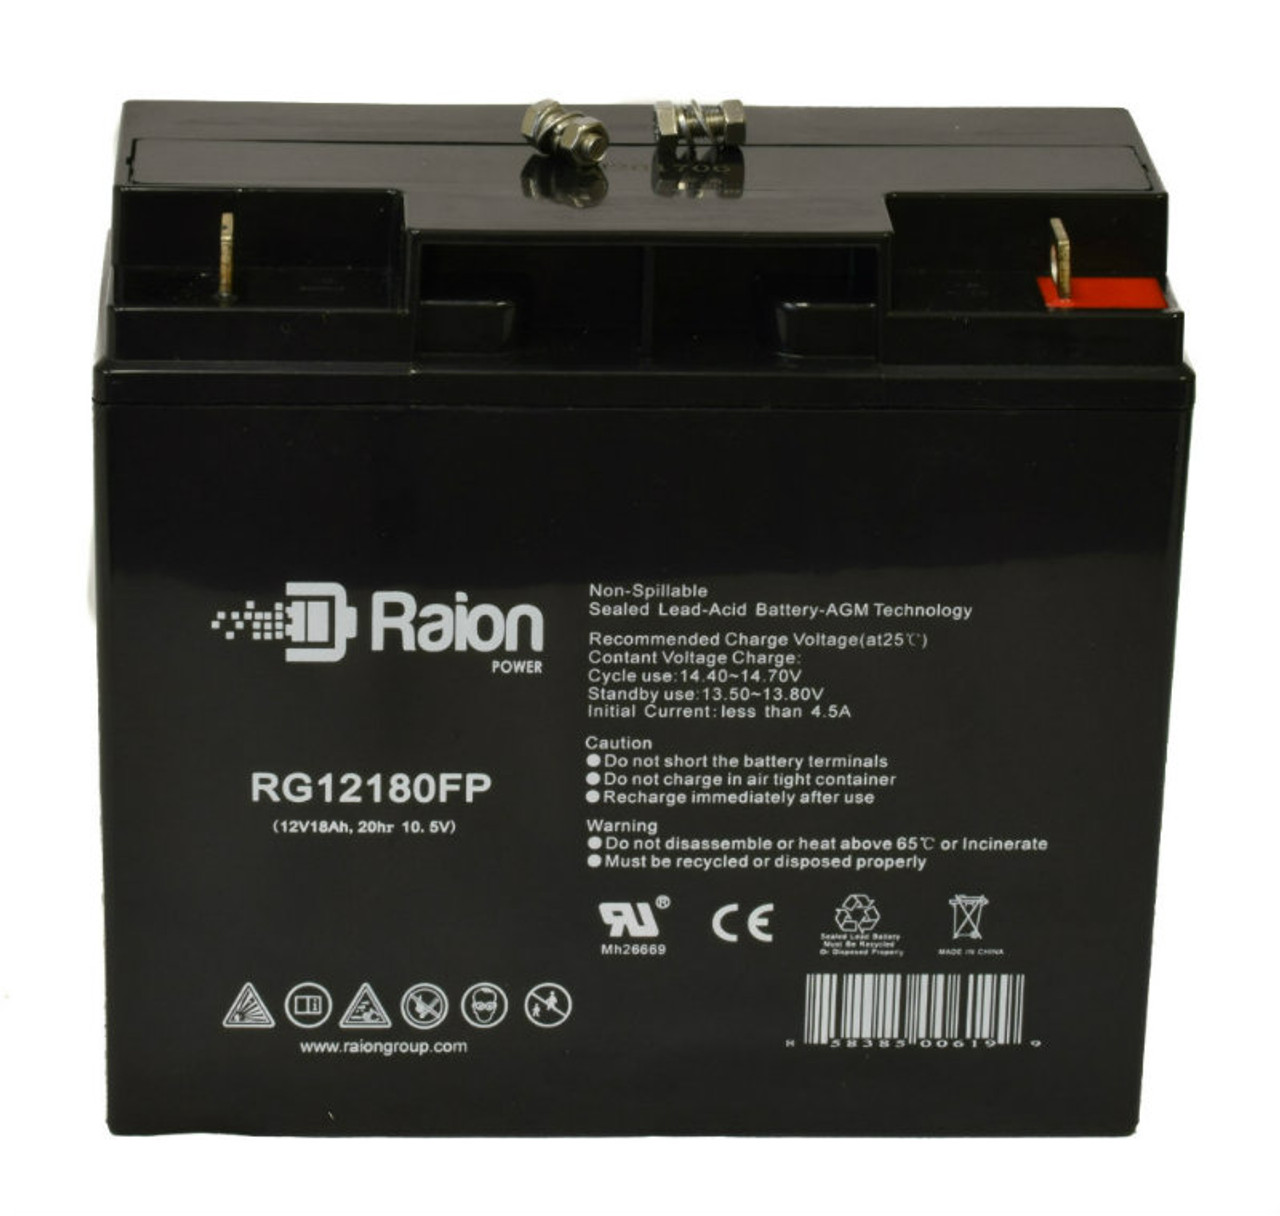 Raion Power RG12180FP 12V 18Ah Lead Acid Battery for FengSheng FS12-18